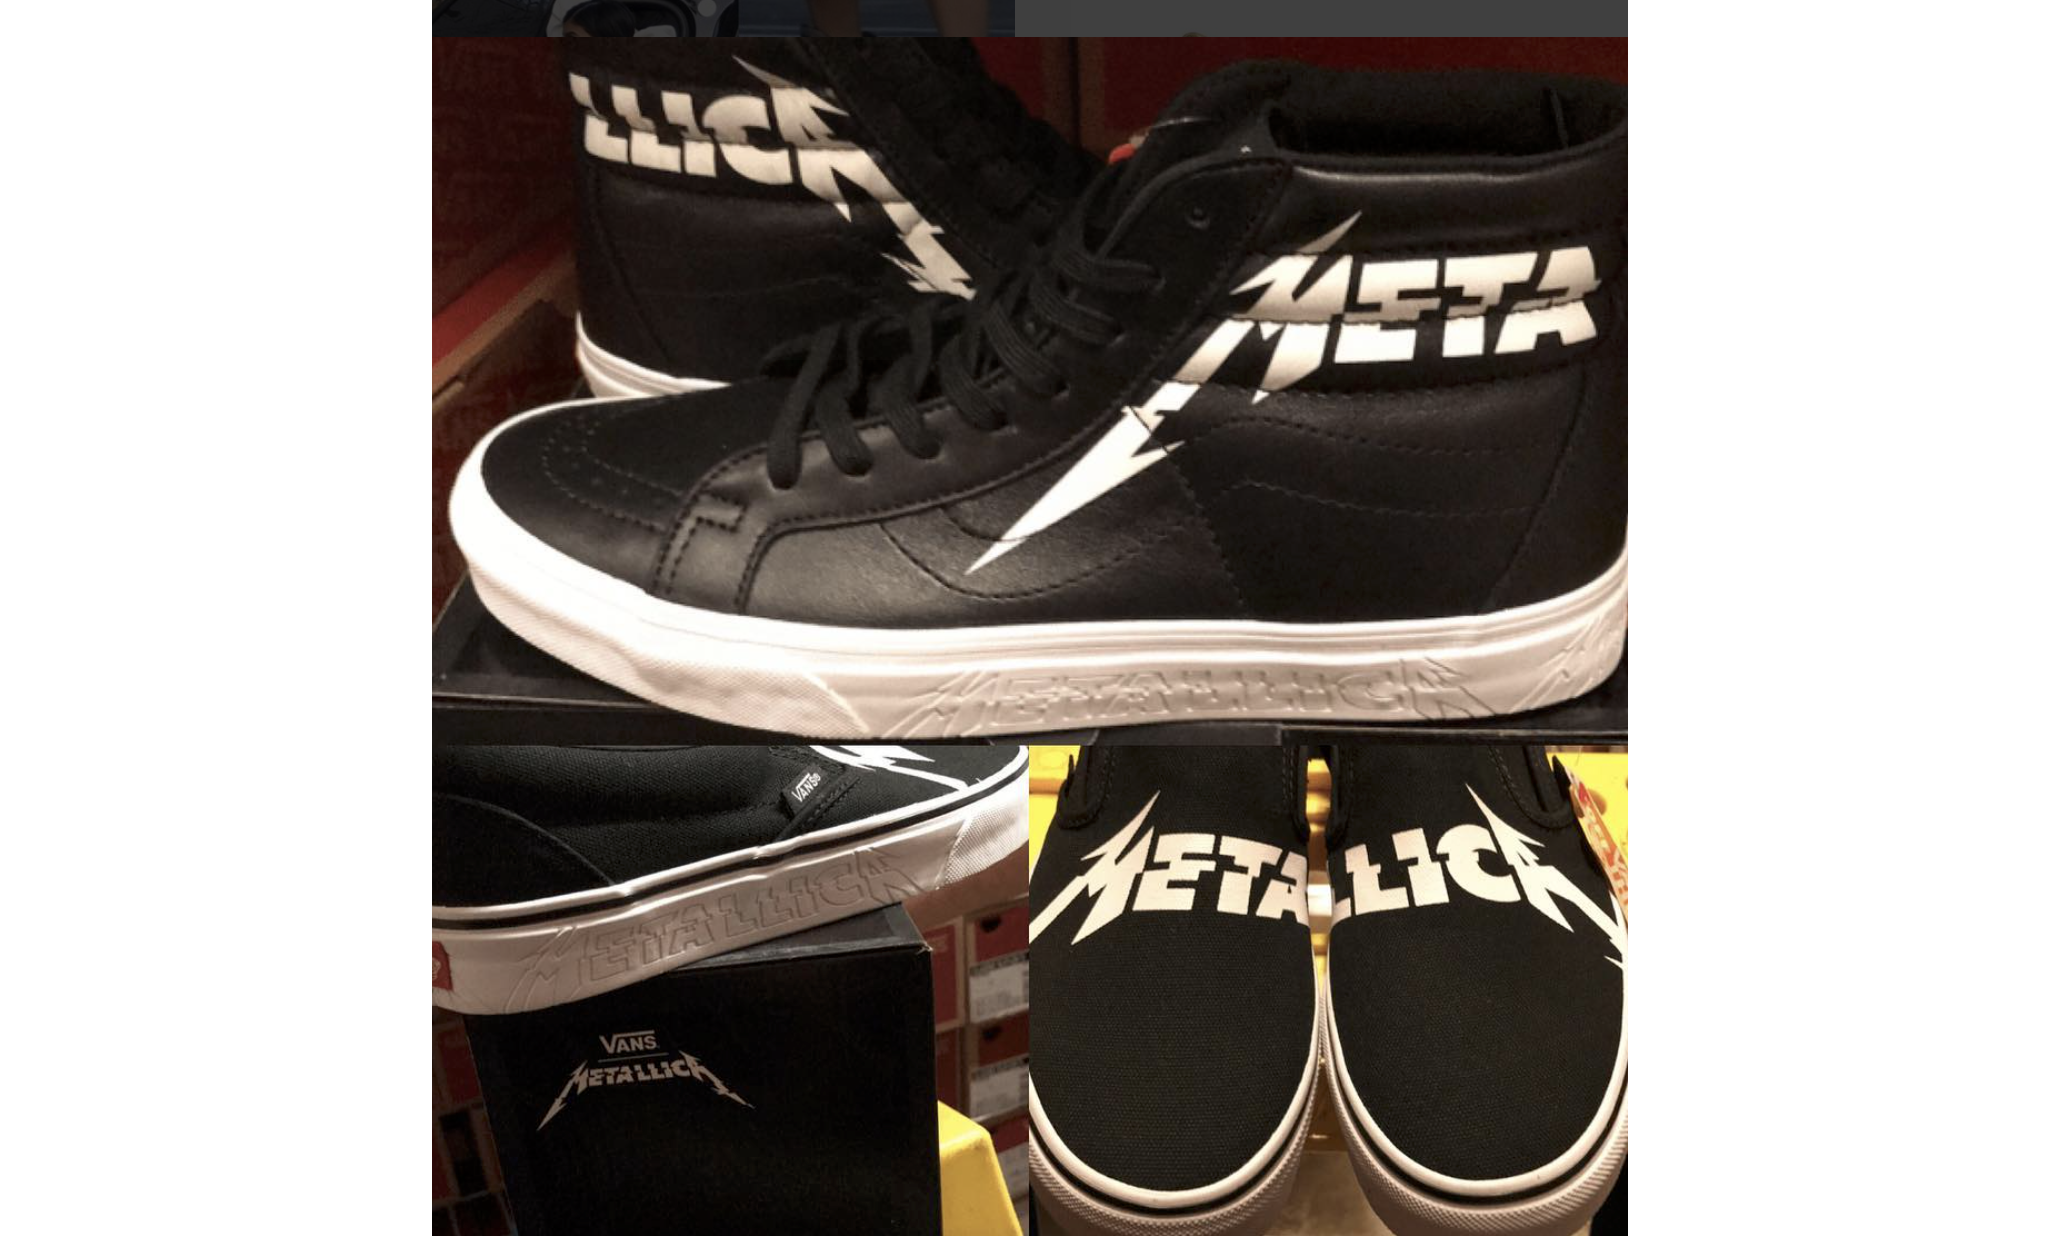 Vans × Metallica 联名鞋款谍照曝光